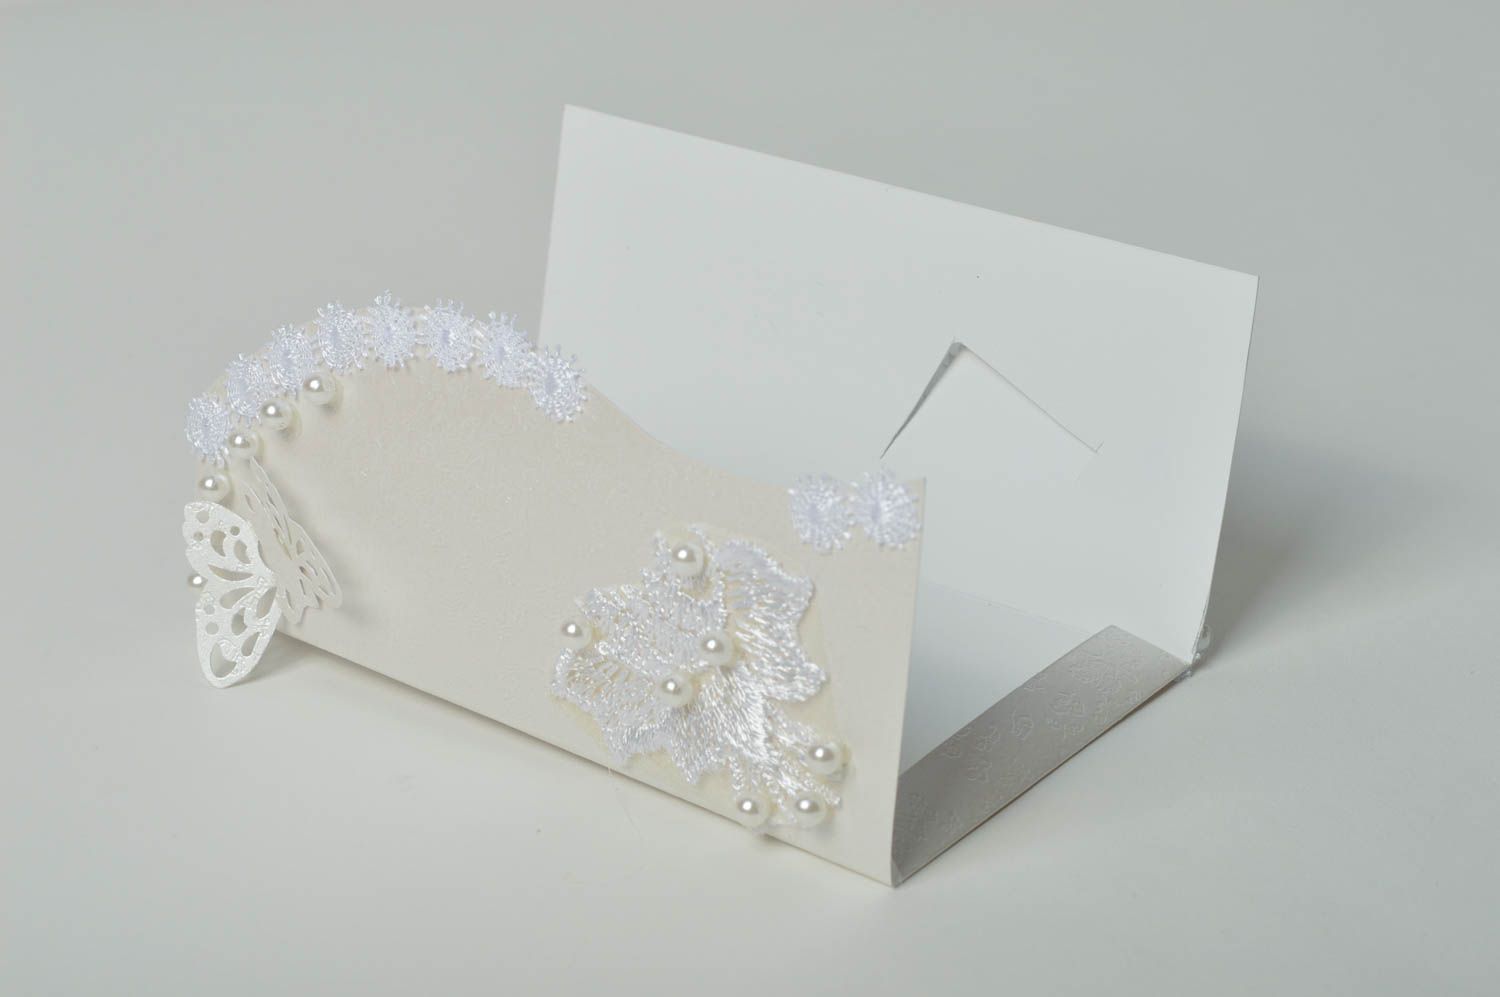 Handmade schöne Grußkarte Verpackung für Geldgeschenk kreative Geschenkidee zart foto 4